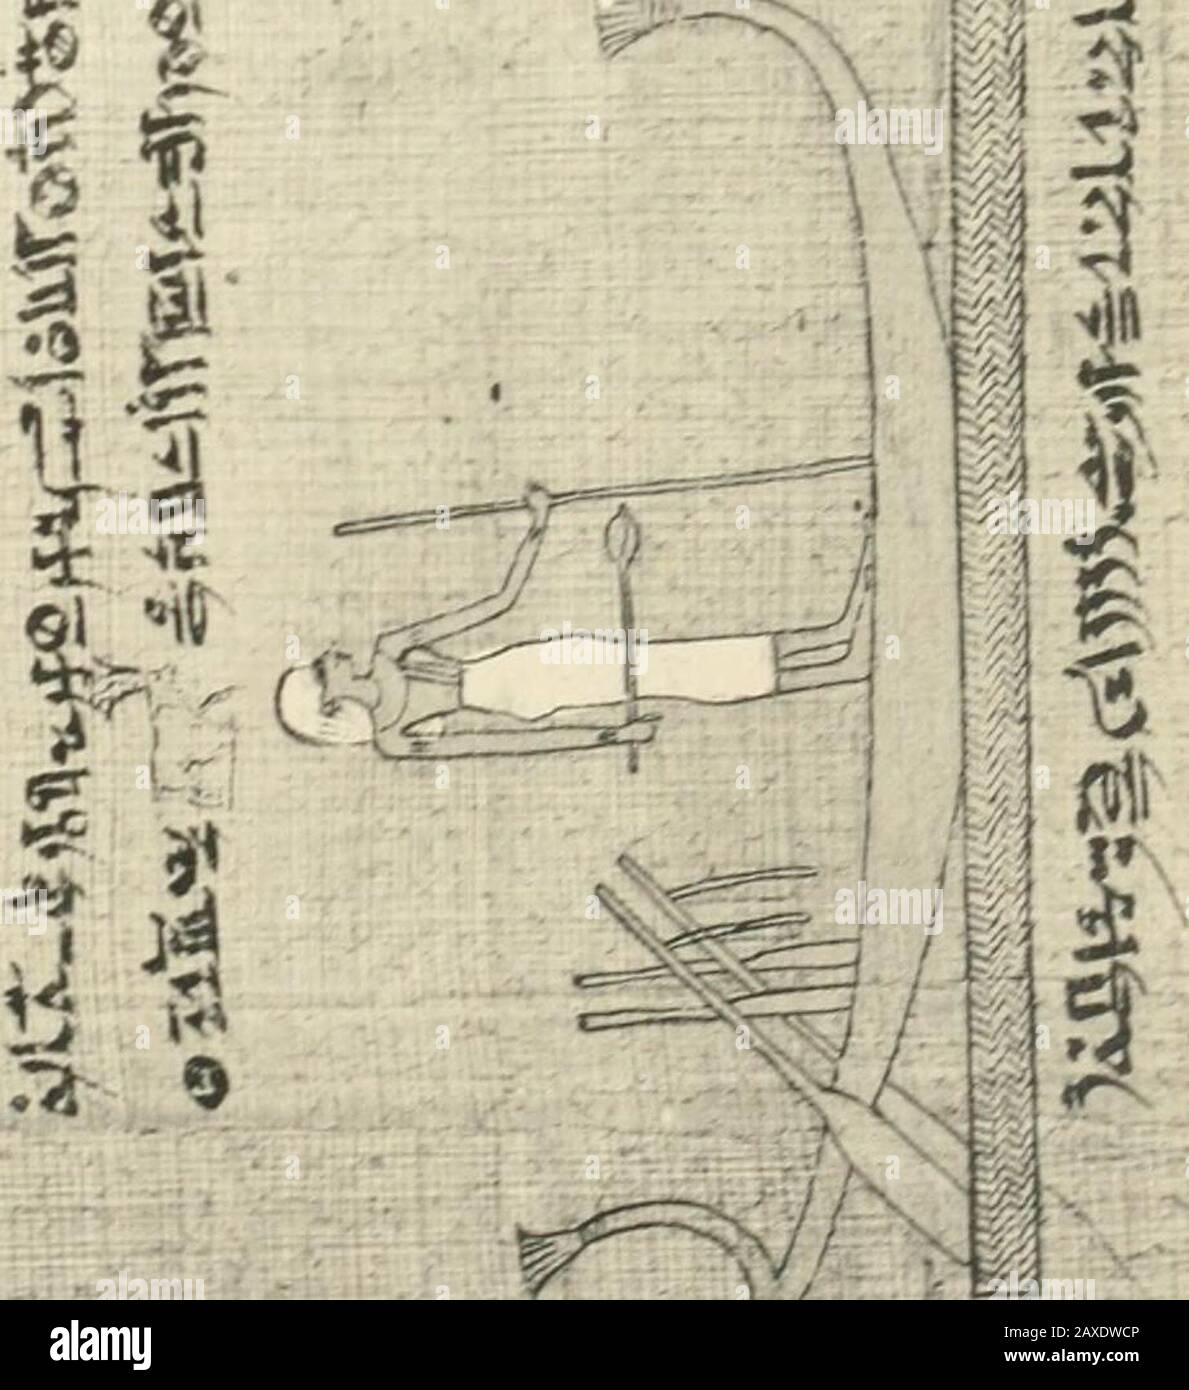 Papyrus Funeraires De La Xxie Dynastie J5 I Ji Gt I Li I F Ii E Iea F V I 1